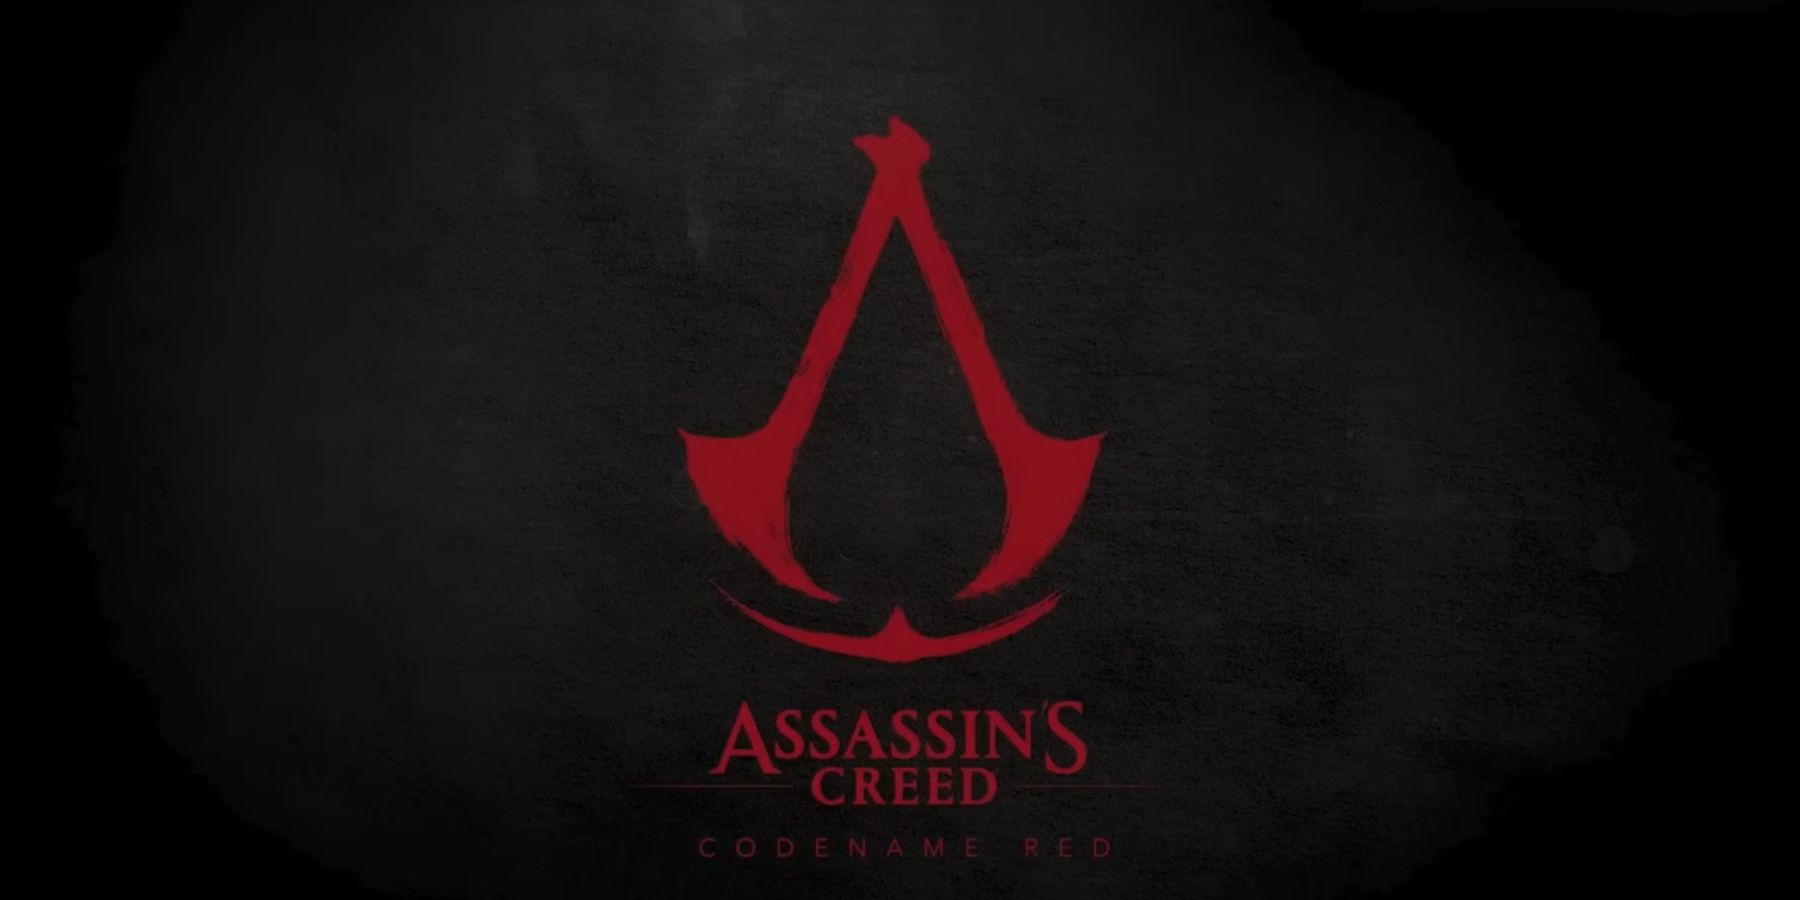 Az Ubisoft munkavállalói igényei a fejlesztők elhagyták a társaságot az Assassin’s Creed Red igazgatója miatt